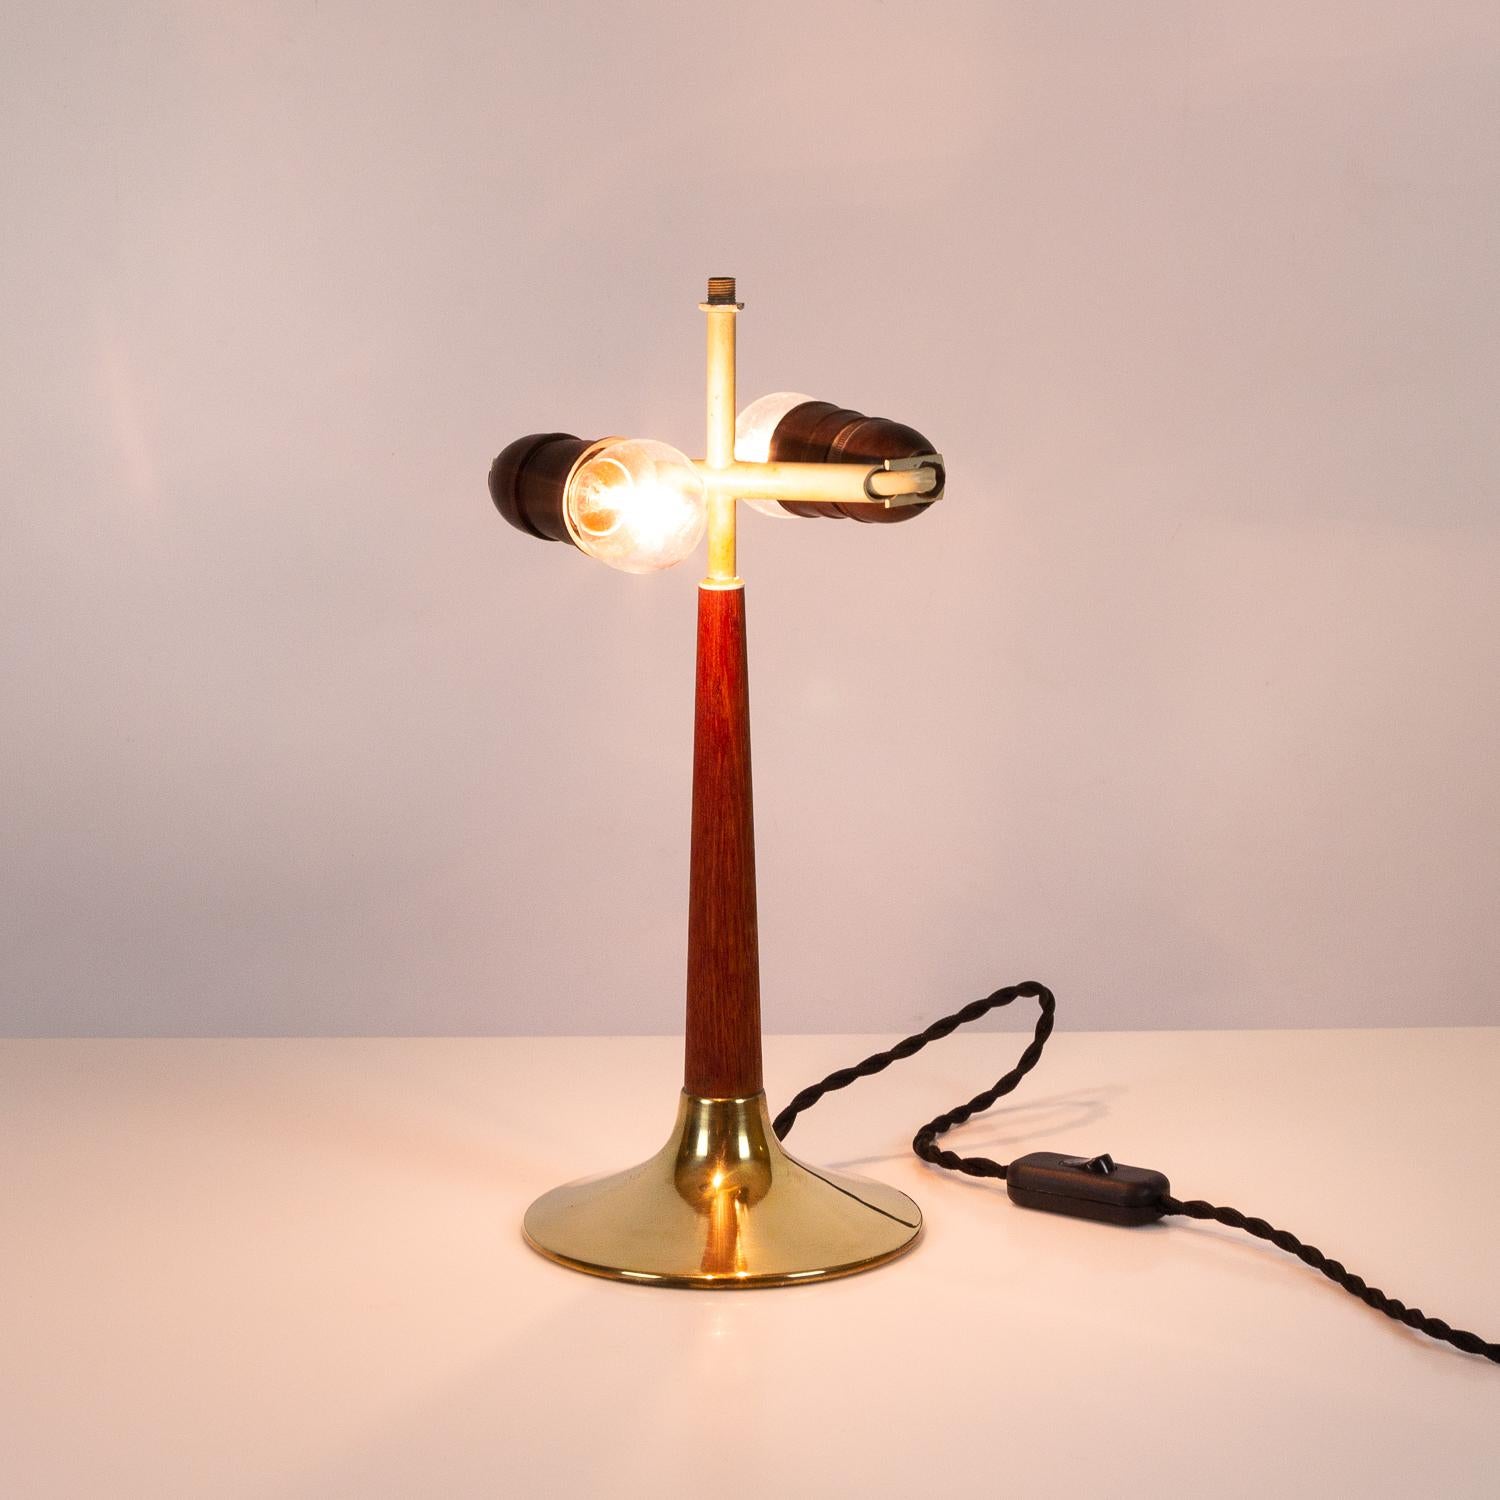 Mid-20th Century Svend Aage Holm Sørensen Model 4109 Midcentury Desk Lamp, Teak & Brass, Denmark